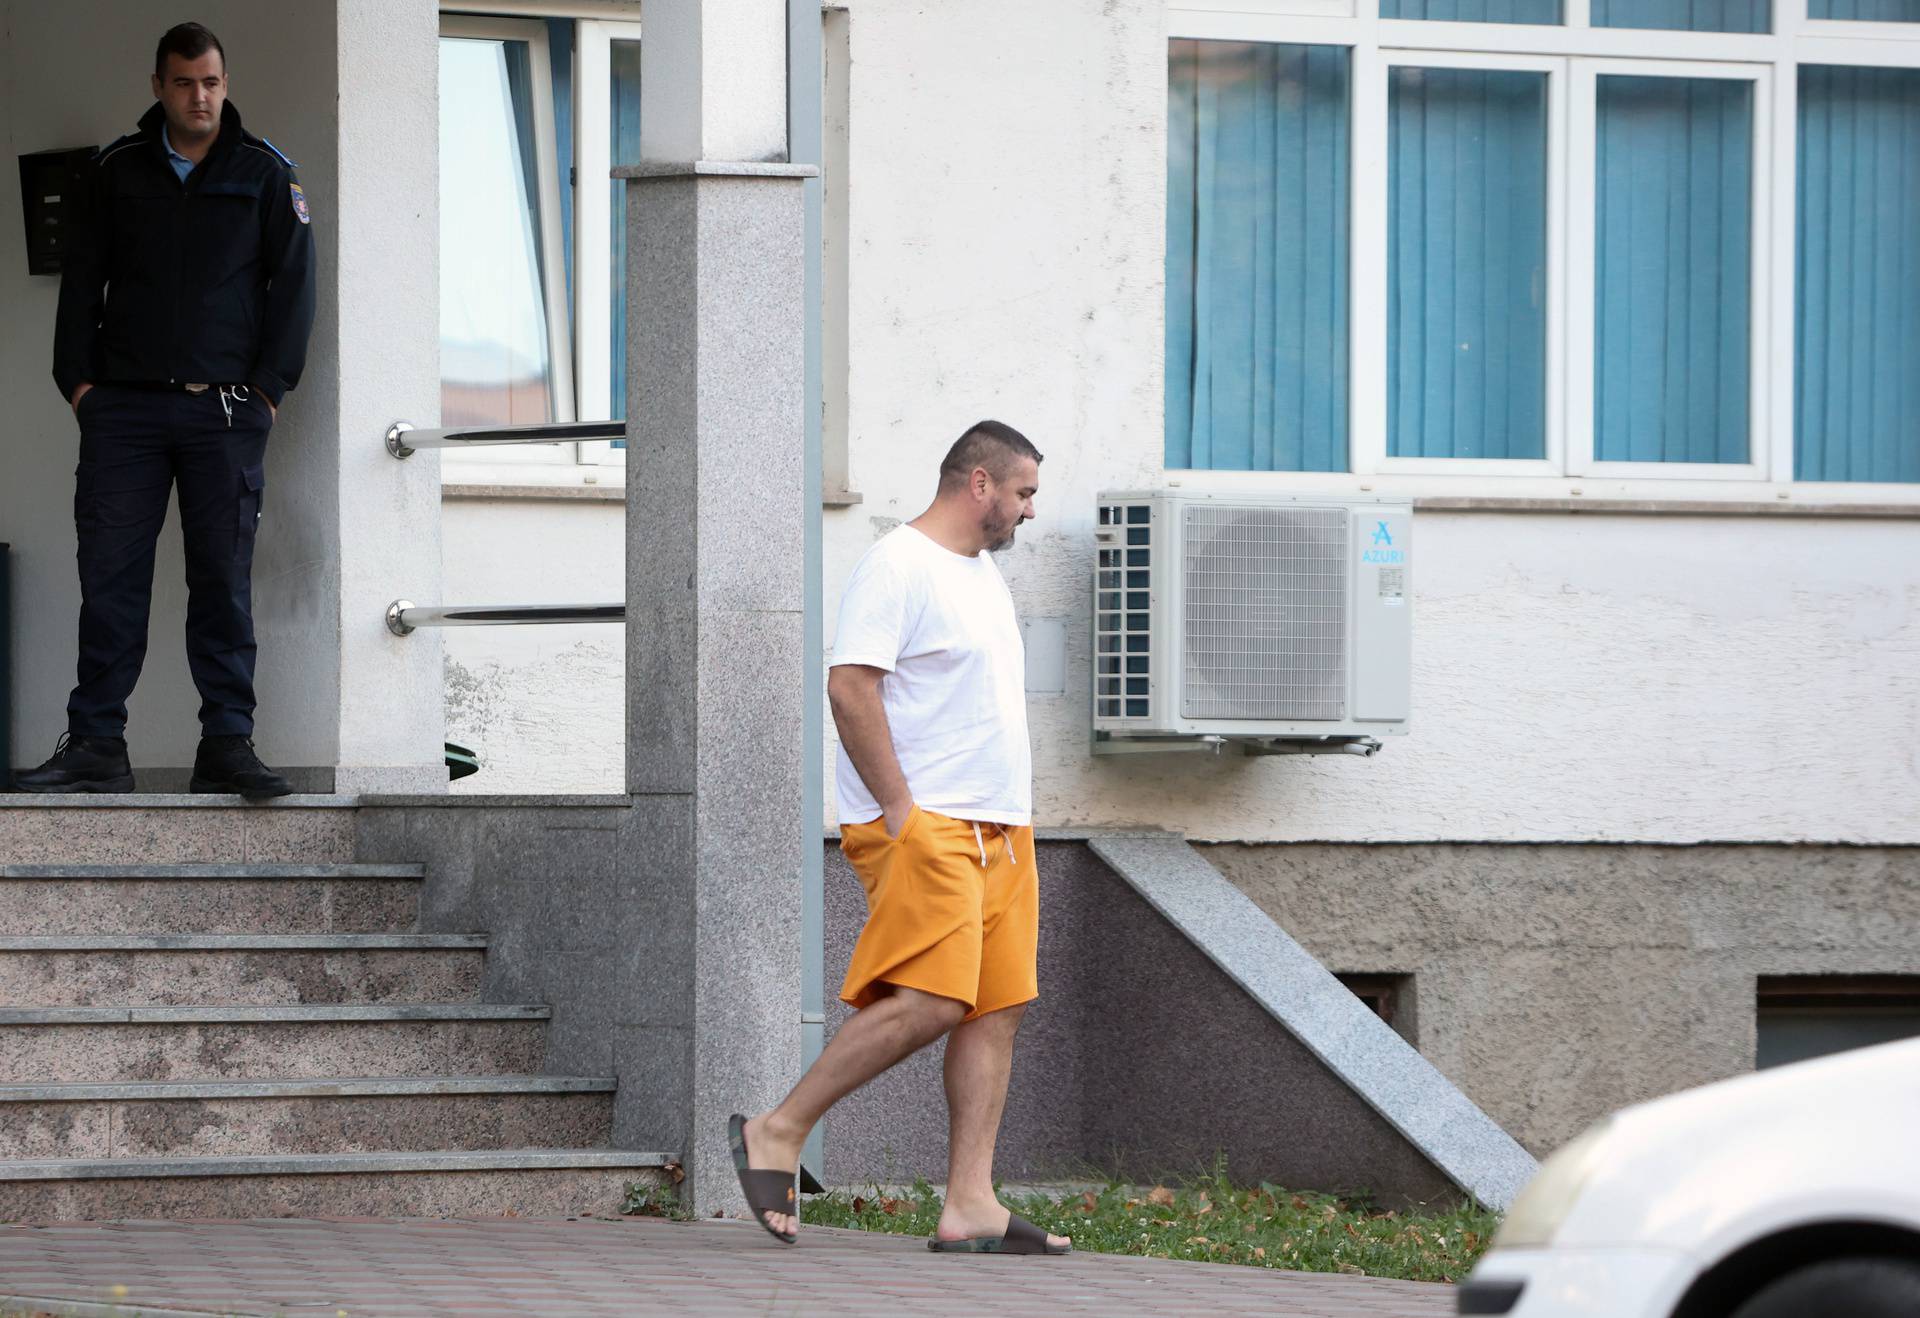 Denis Buntić javio se u policijski postaju u Ljubuškom 